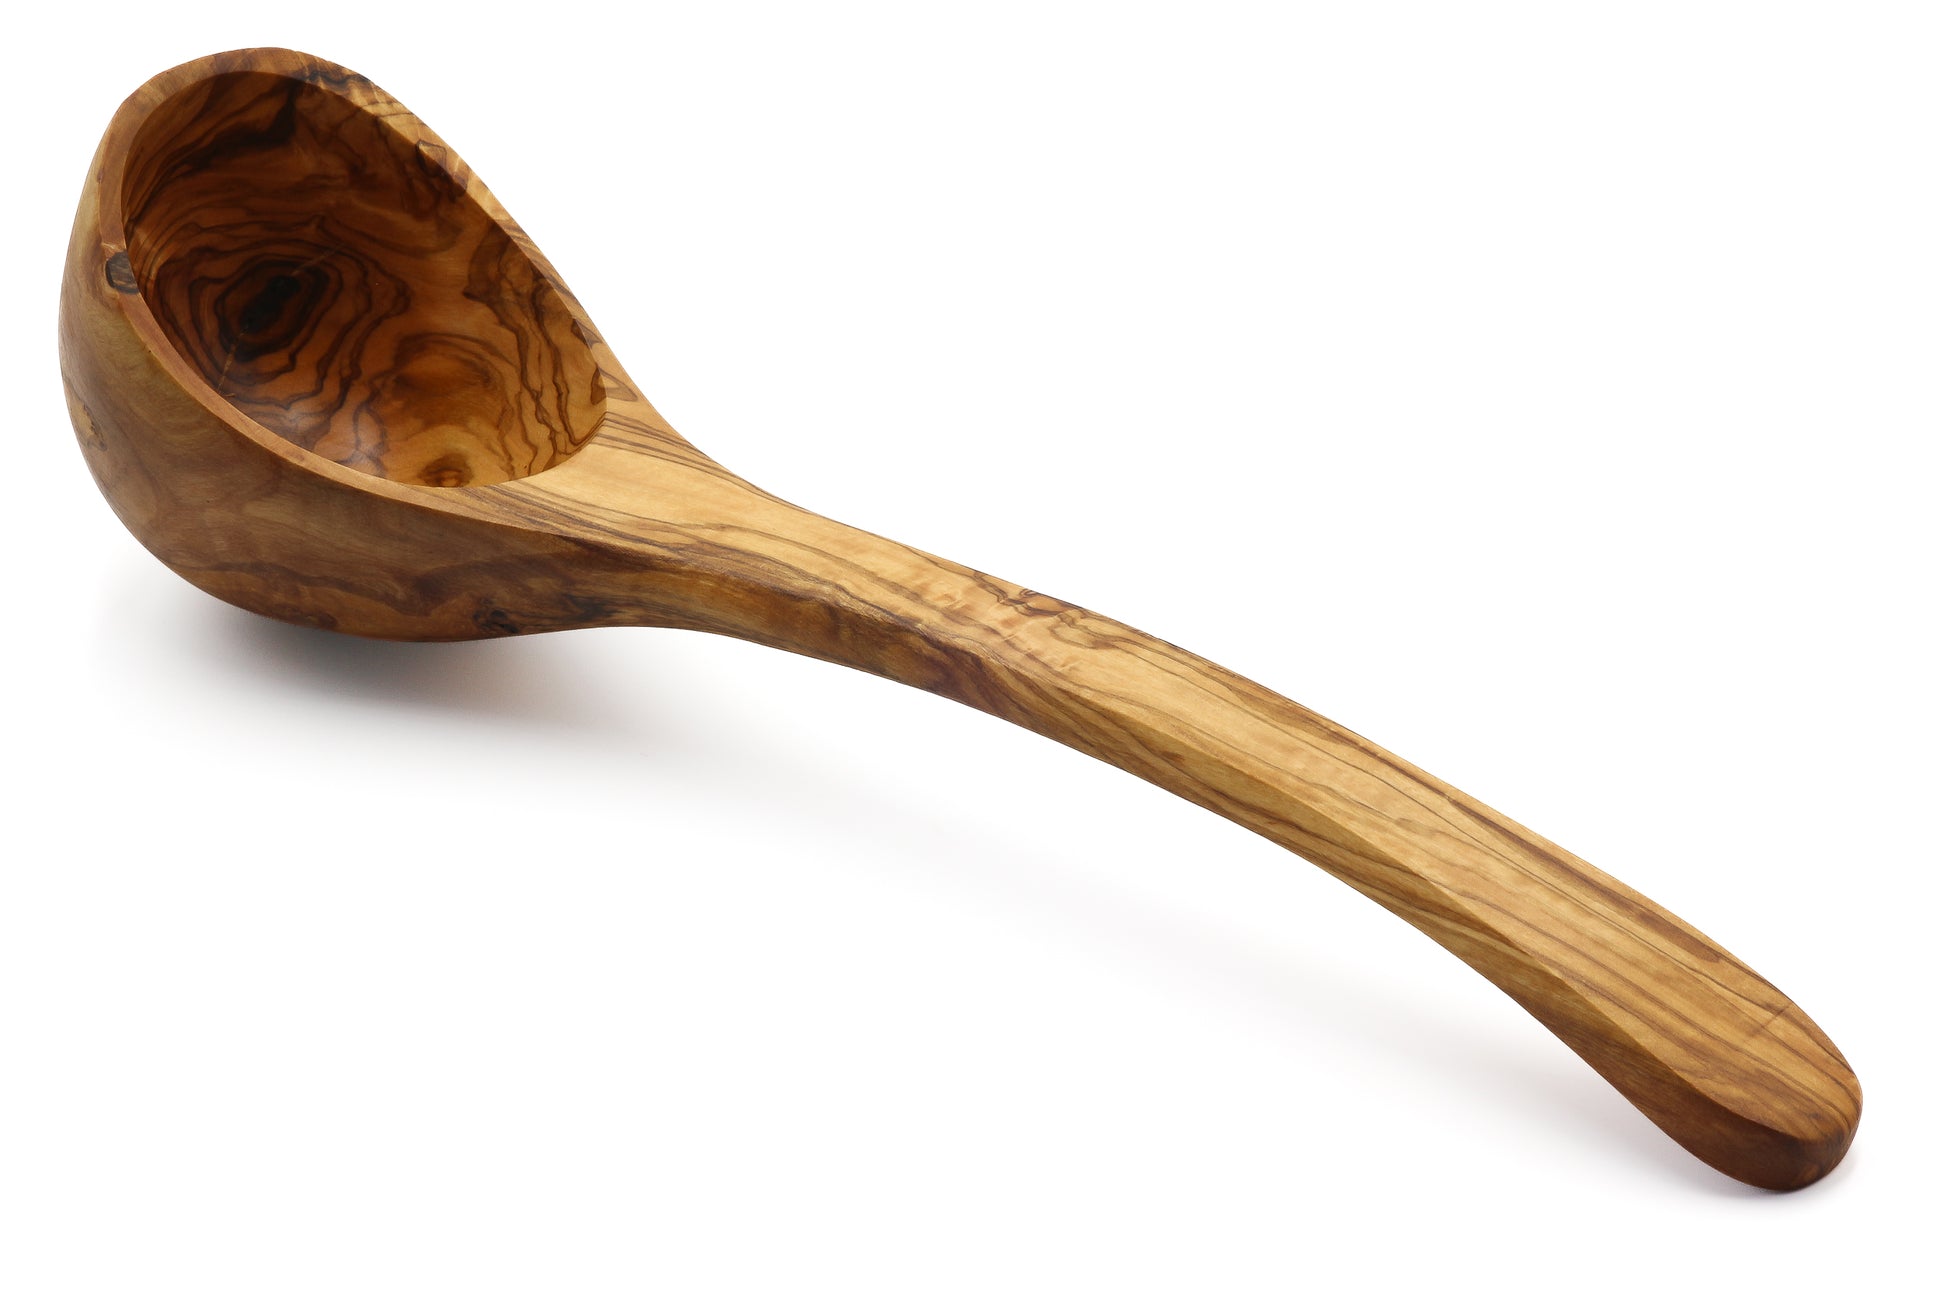 Elegant olive wood ladle for serving soups